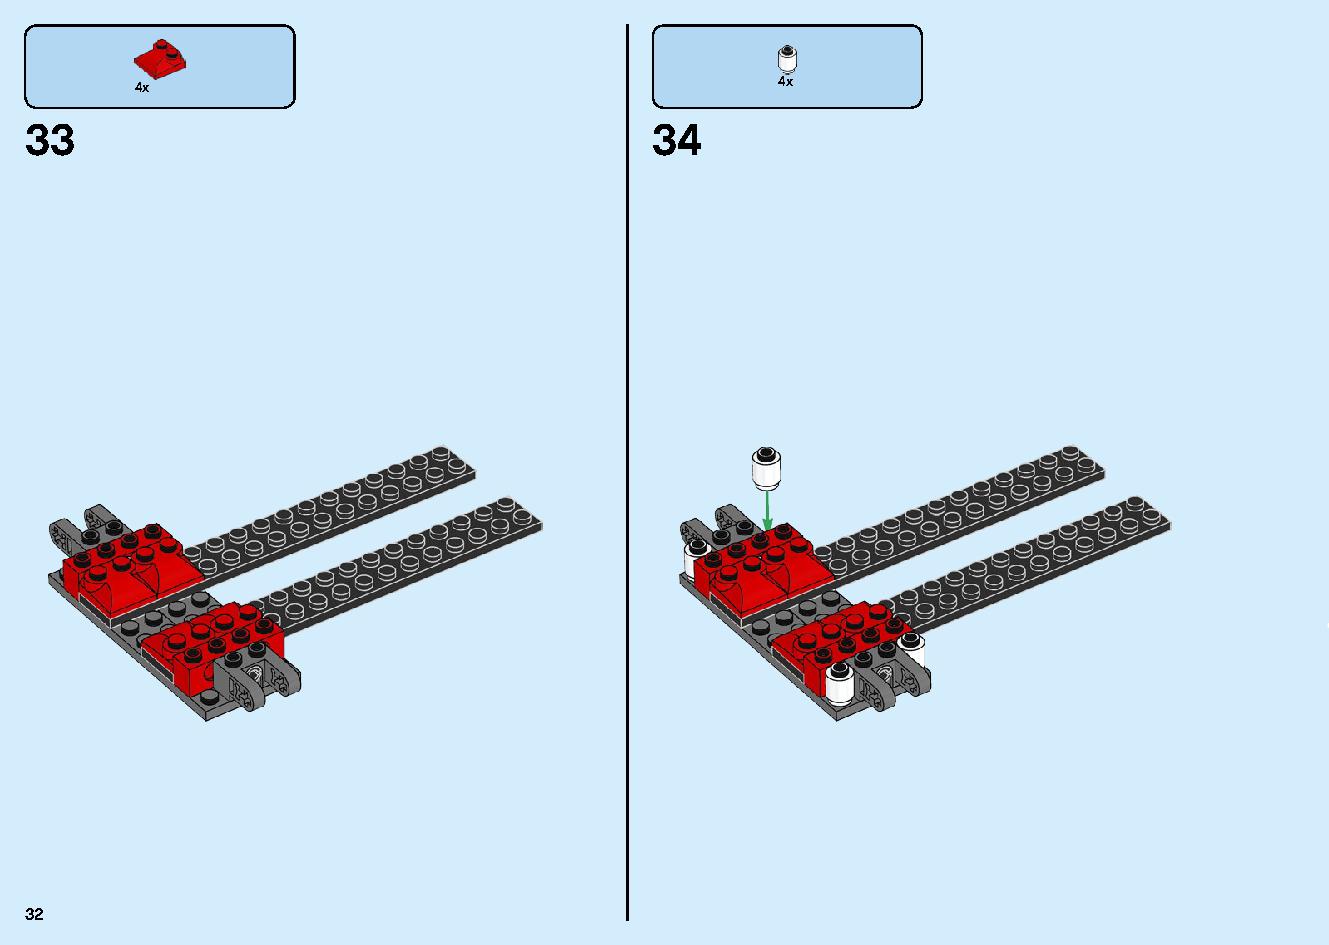 陸上戦艦バウンティ号 70677 レゴの商品情報 レゴの説明書・組立方法 32 page